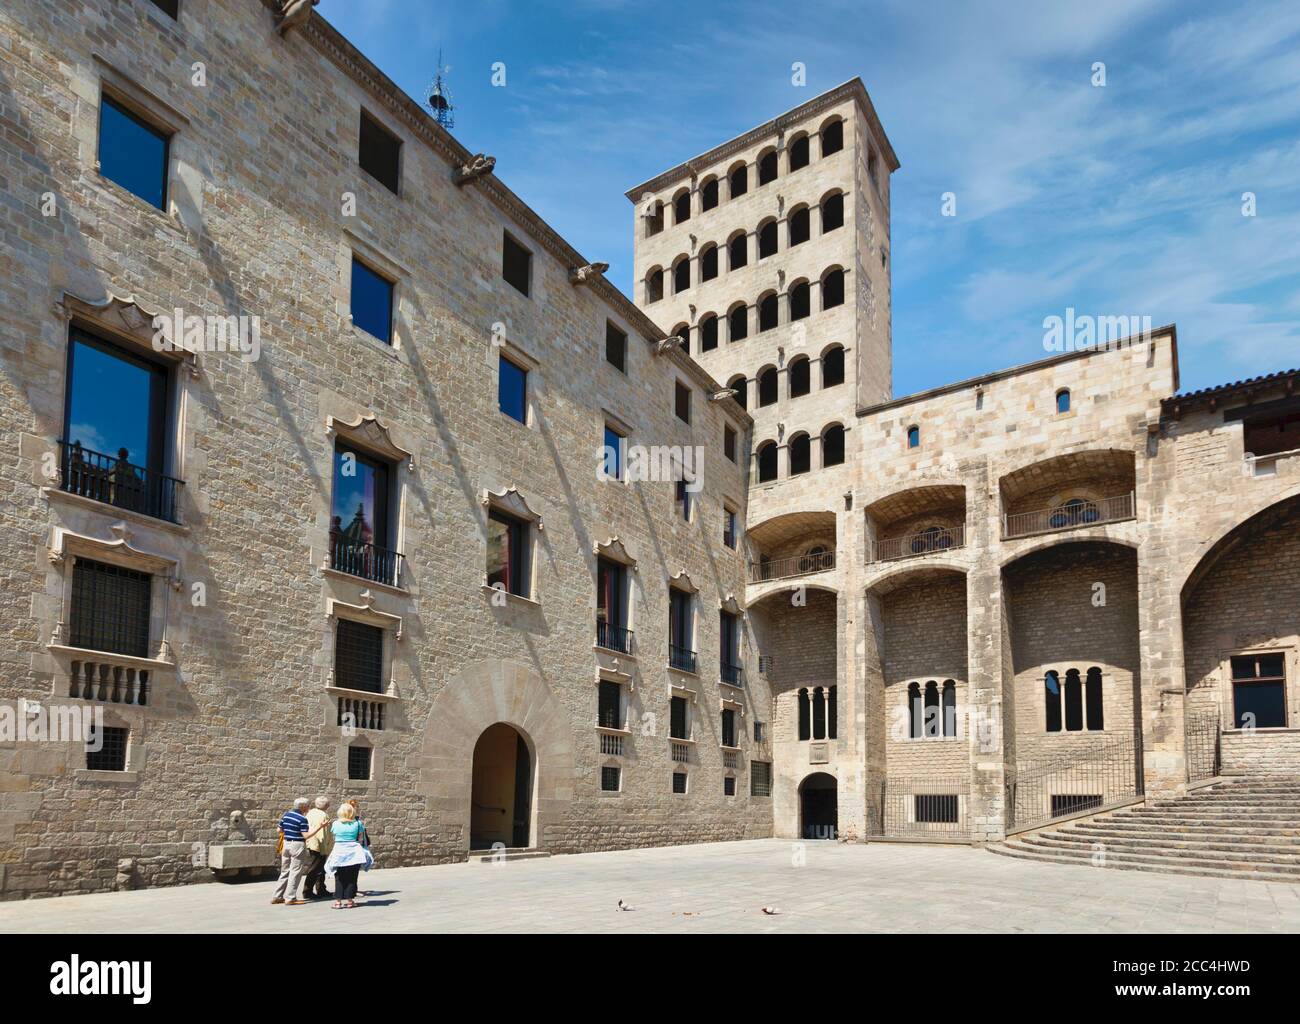 Barcellona, Provincia di Barcellona, Catalogna, Spagna. La medievale Plaça del Rei, o Piazza del Re, nel quartiere Gotico. Foto Stock